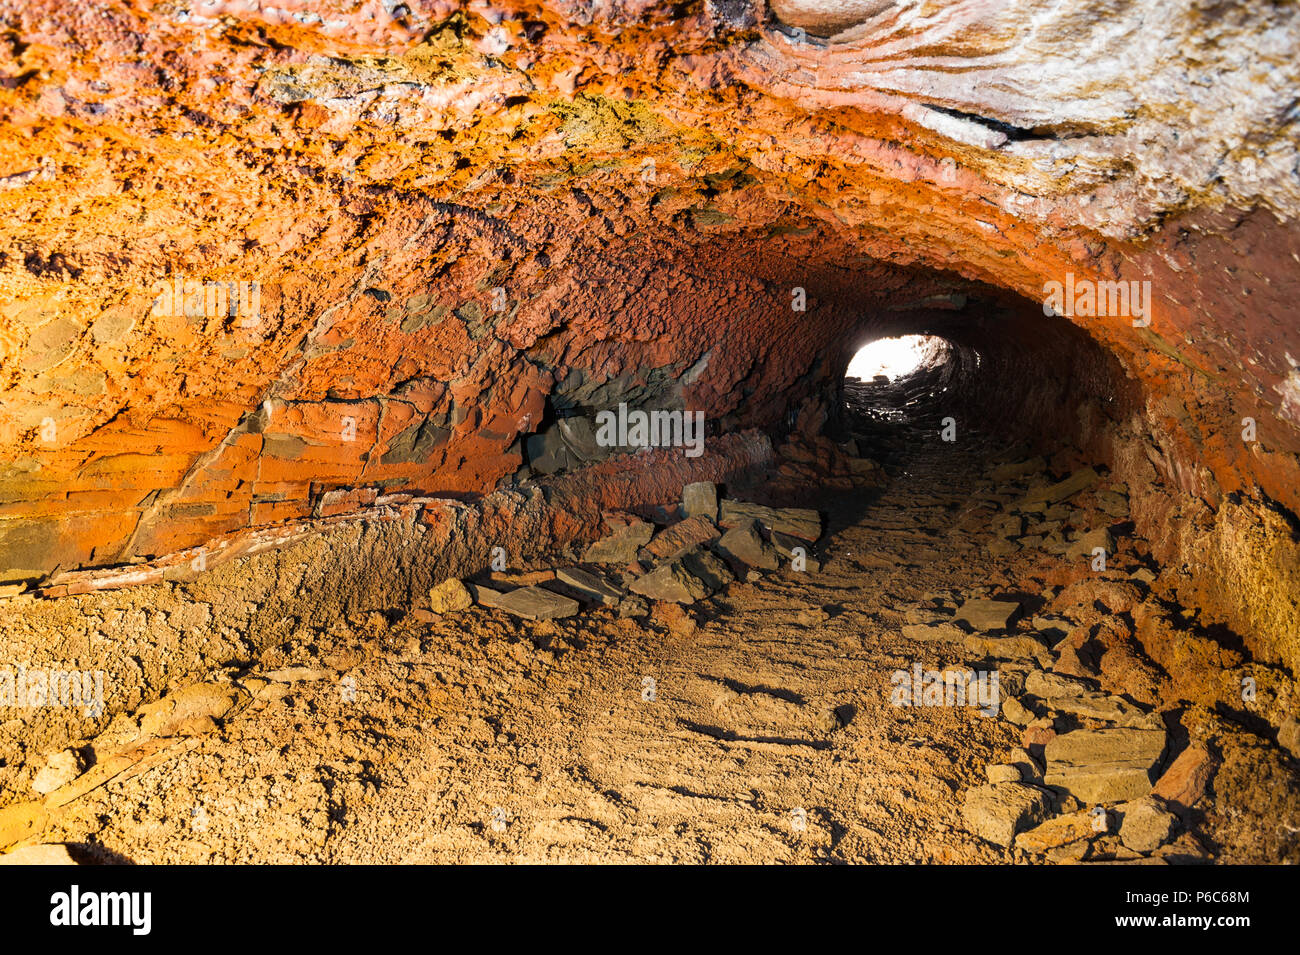 Craggy roches formant une grotte de lave éclairés par la lumière artificielle, capturés lors d'une exposition longue durée offre contrastée couleurs orange, l'islande avril 2018 Banque D'Images